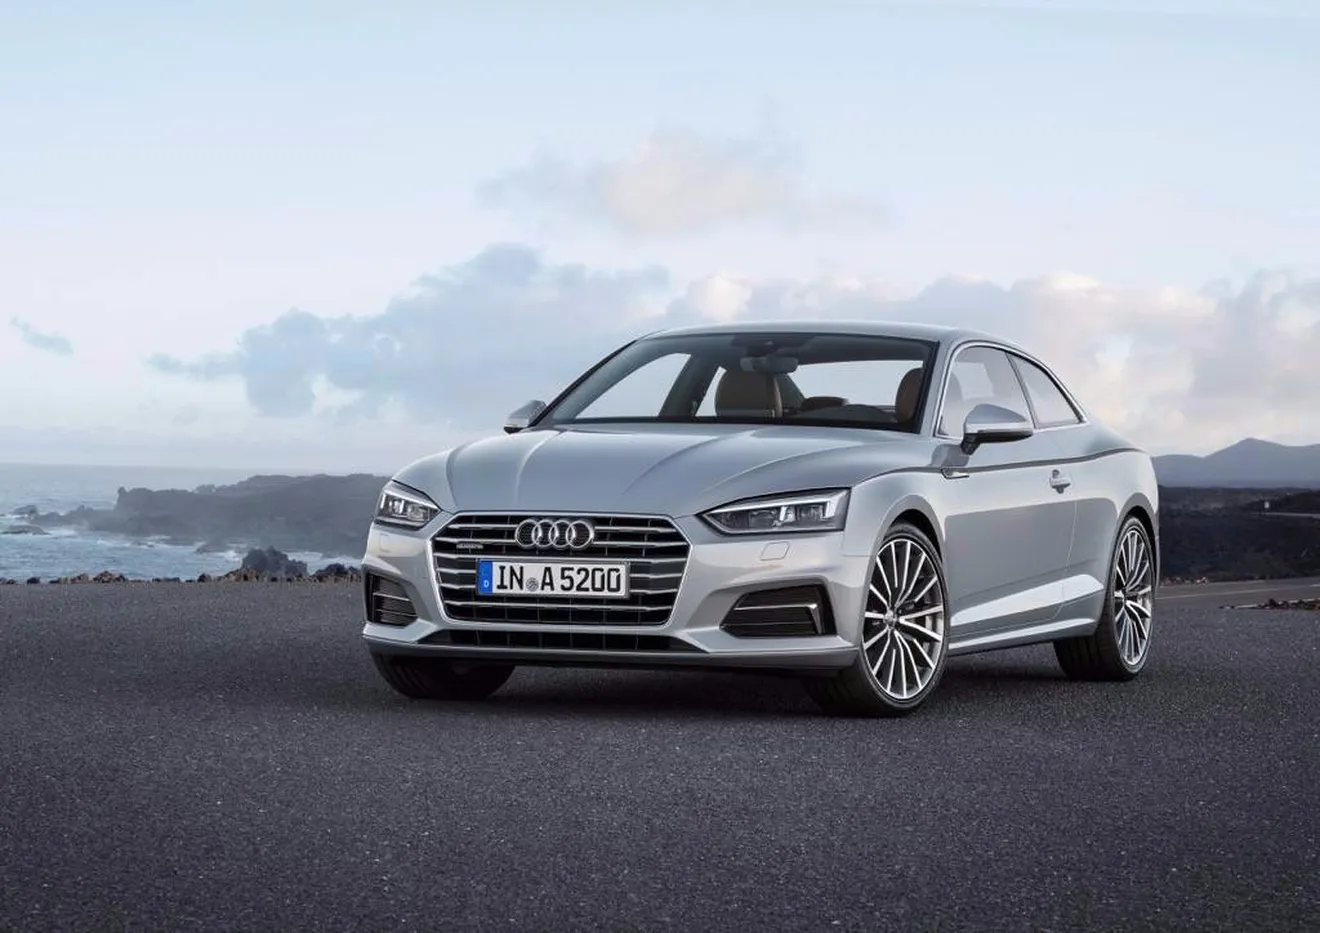 Llegan los nuevos Audi A5 y S5 2016: estos son sus precios para España